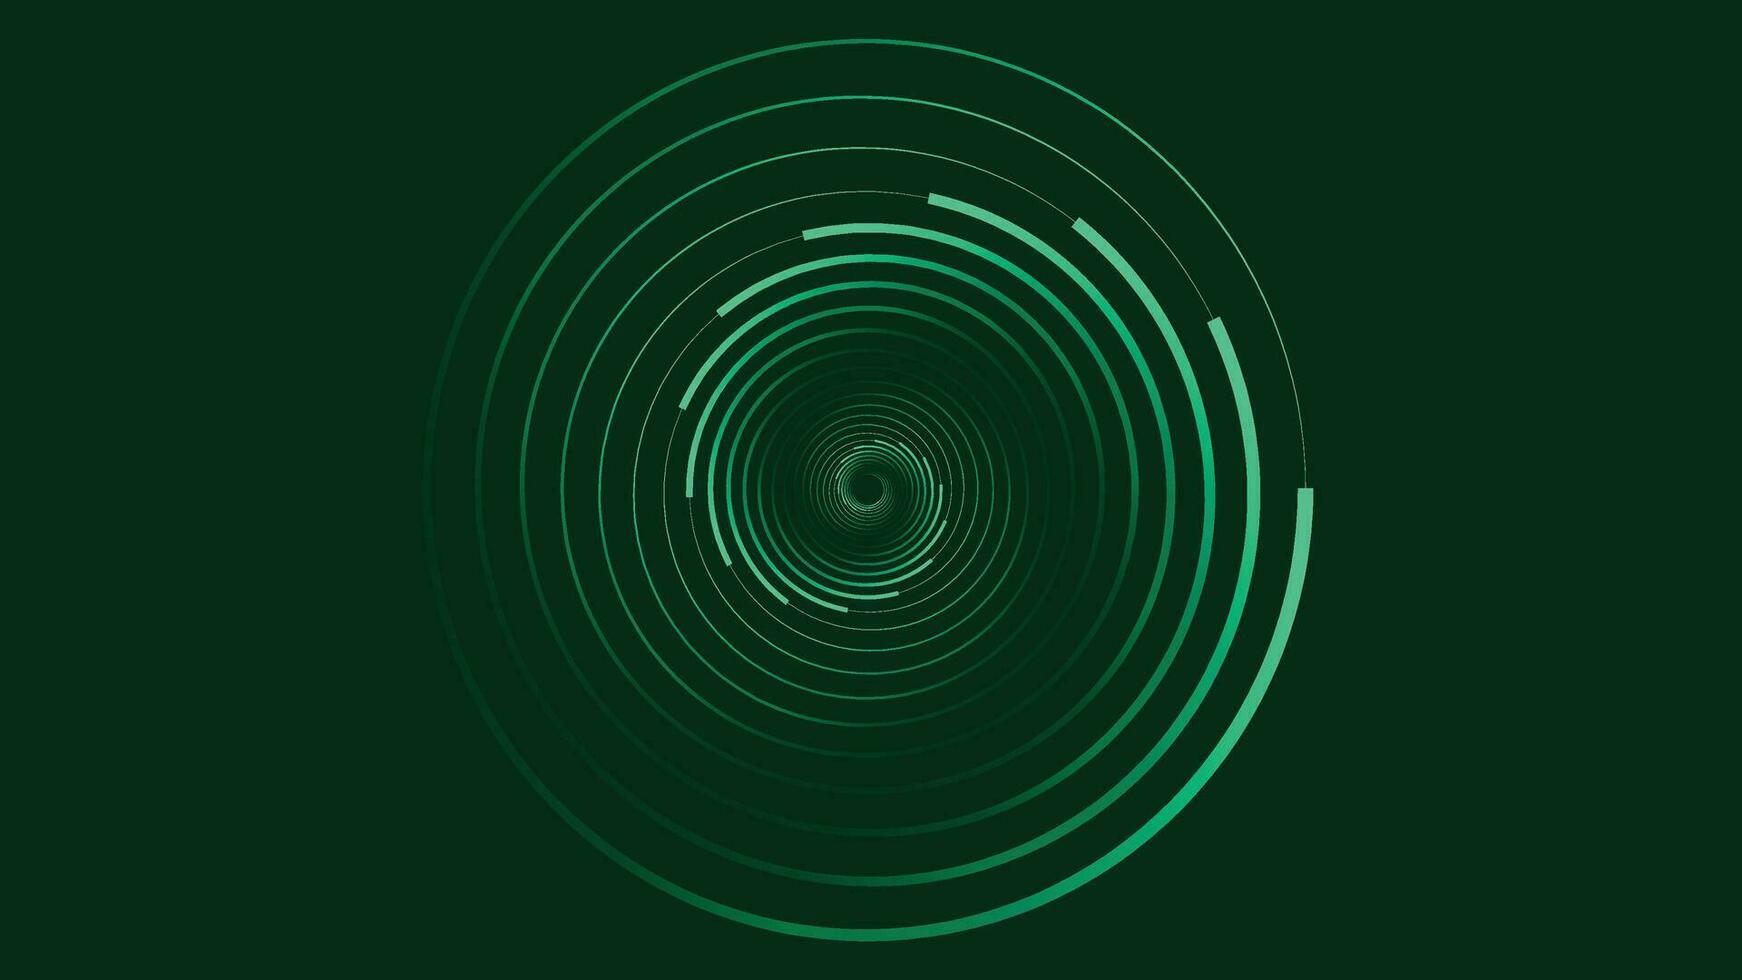 abstarct virvel runda spiral prickad bakgrund i mörk grön. vektor